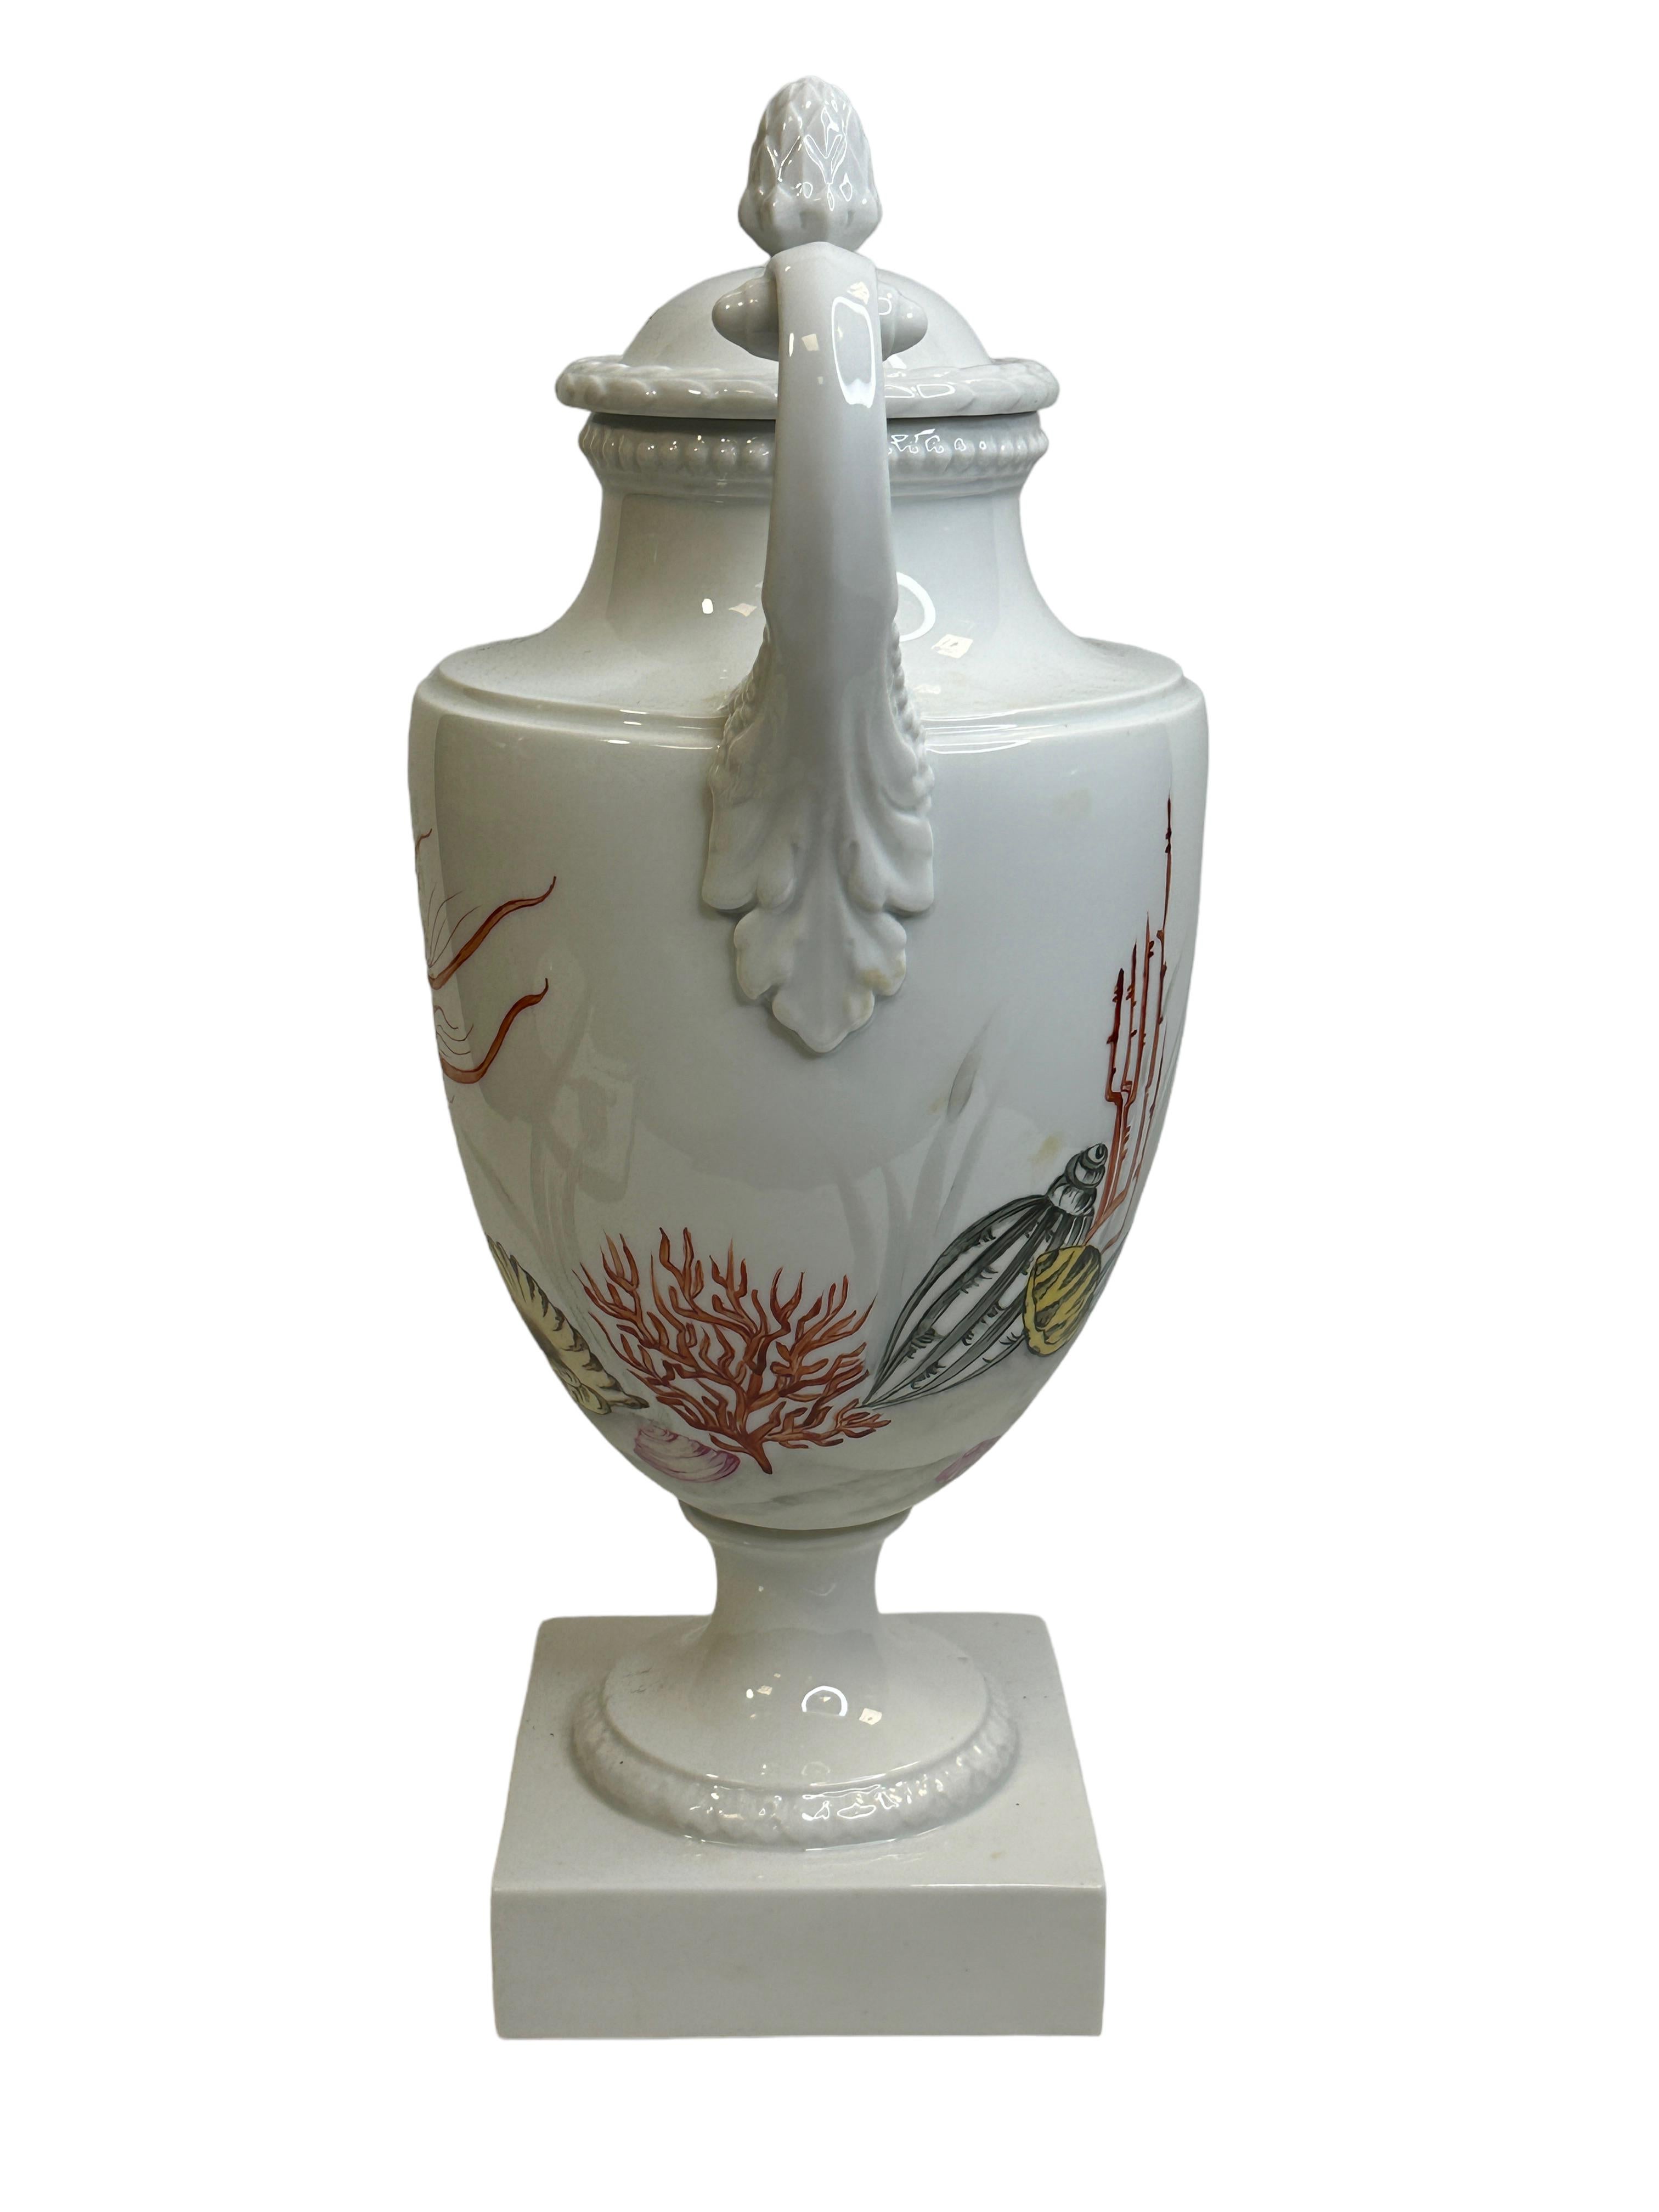 Amphora lidded Vase with Sea Creatures Motif by Lindner Porcelain vintage 1960s For Sale 2